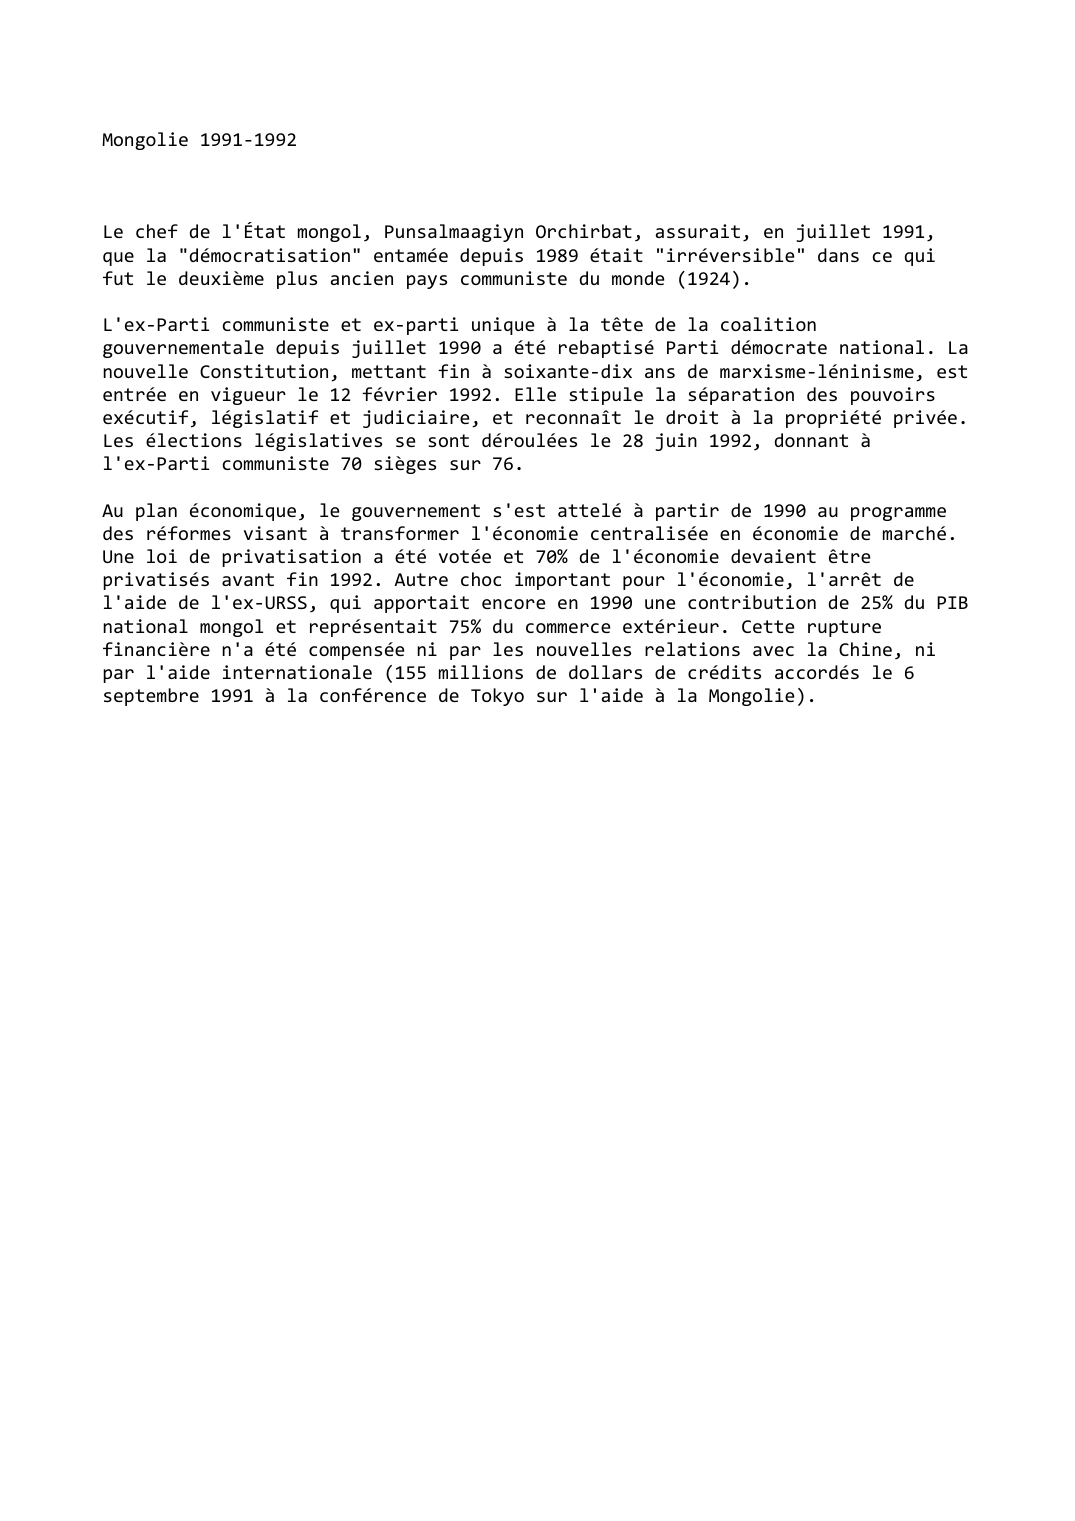 Prévisualisation du document Mongolie 1991-1992